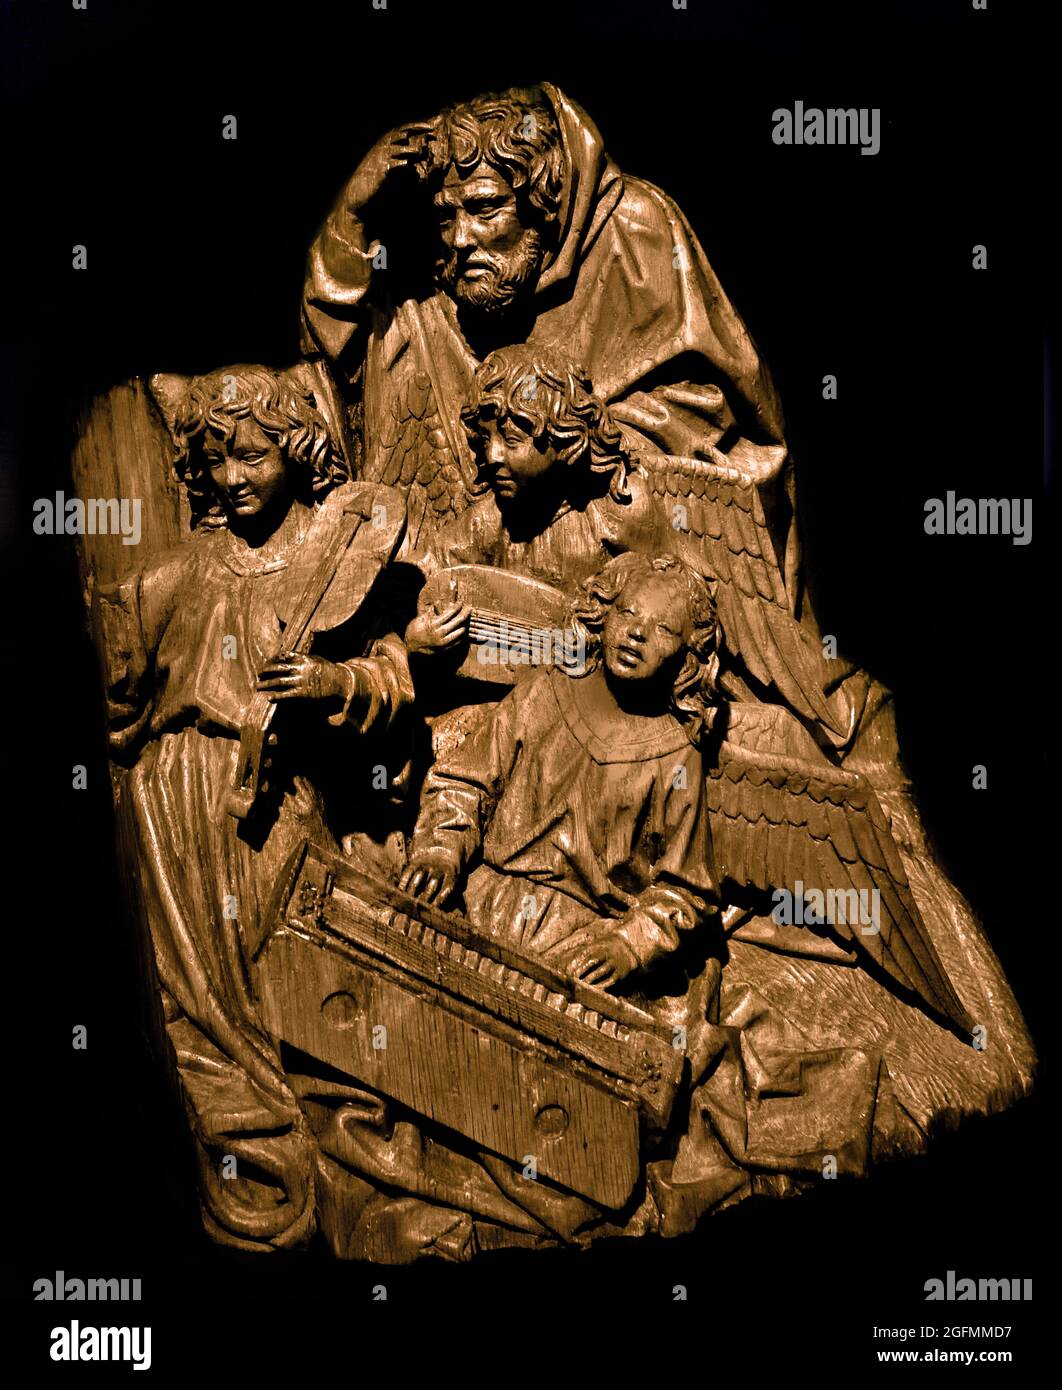 Maria, Giuseppe e tre Angeli, Adriaen van Wesel, c.. 1475 - c. 1477 quercia con tracce di policromi tre angeli che fanno musica con Giuseppe, frammento dell'altare di Maria della Fratellanza nostra Signora a Den Bosch Dutch, Paesi Bassi . 1470 - 1480 ) ( la morte della Vergine, frammento dell'altare mariano della Confraternita Illustria della Beata Signora di Den Bosch) ( Adriaen van Wesel fu uno dei più importanti intagliatori del nord dei Paesi Bassi, conosciuto ben oltre la sua città natale di Utrecht. Il suo lavoro comprende grandi altari per chiese a Delft, Zwolle, ‘Hertogenbosch e Utrecht ) Foto Stock